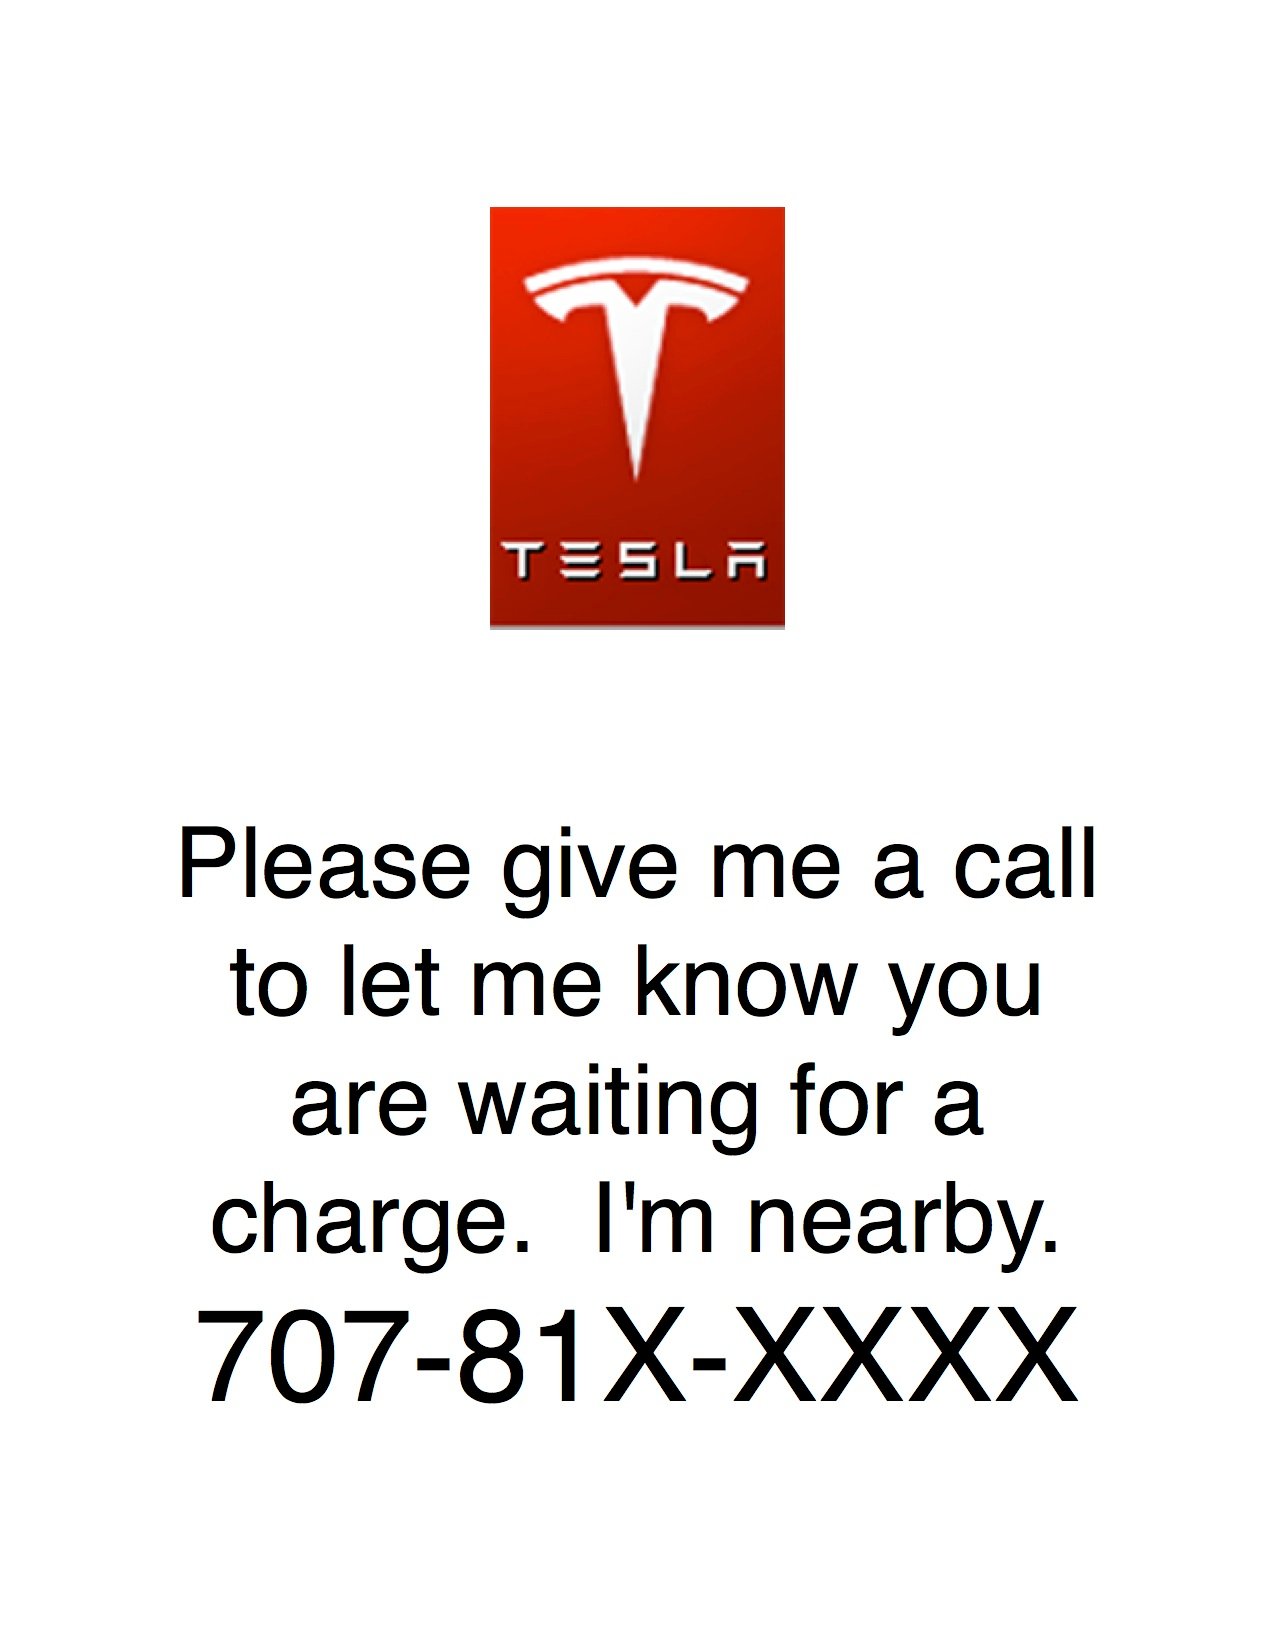 Tesla PlacardX.jpg